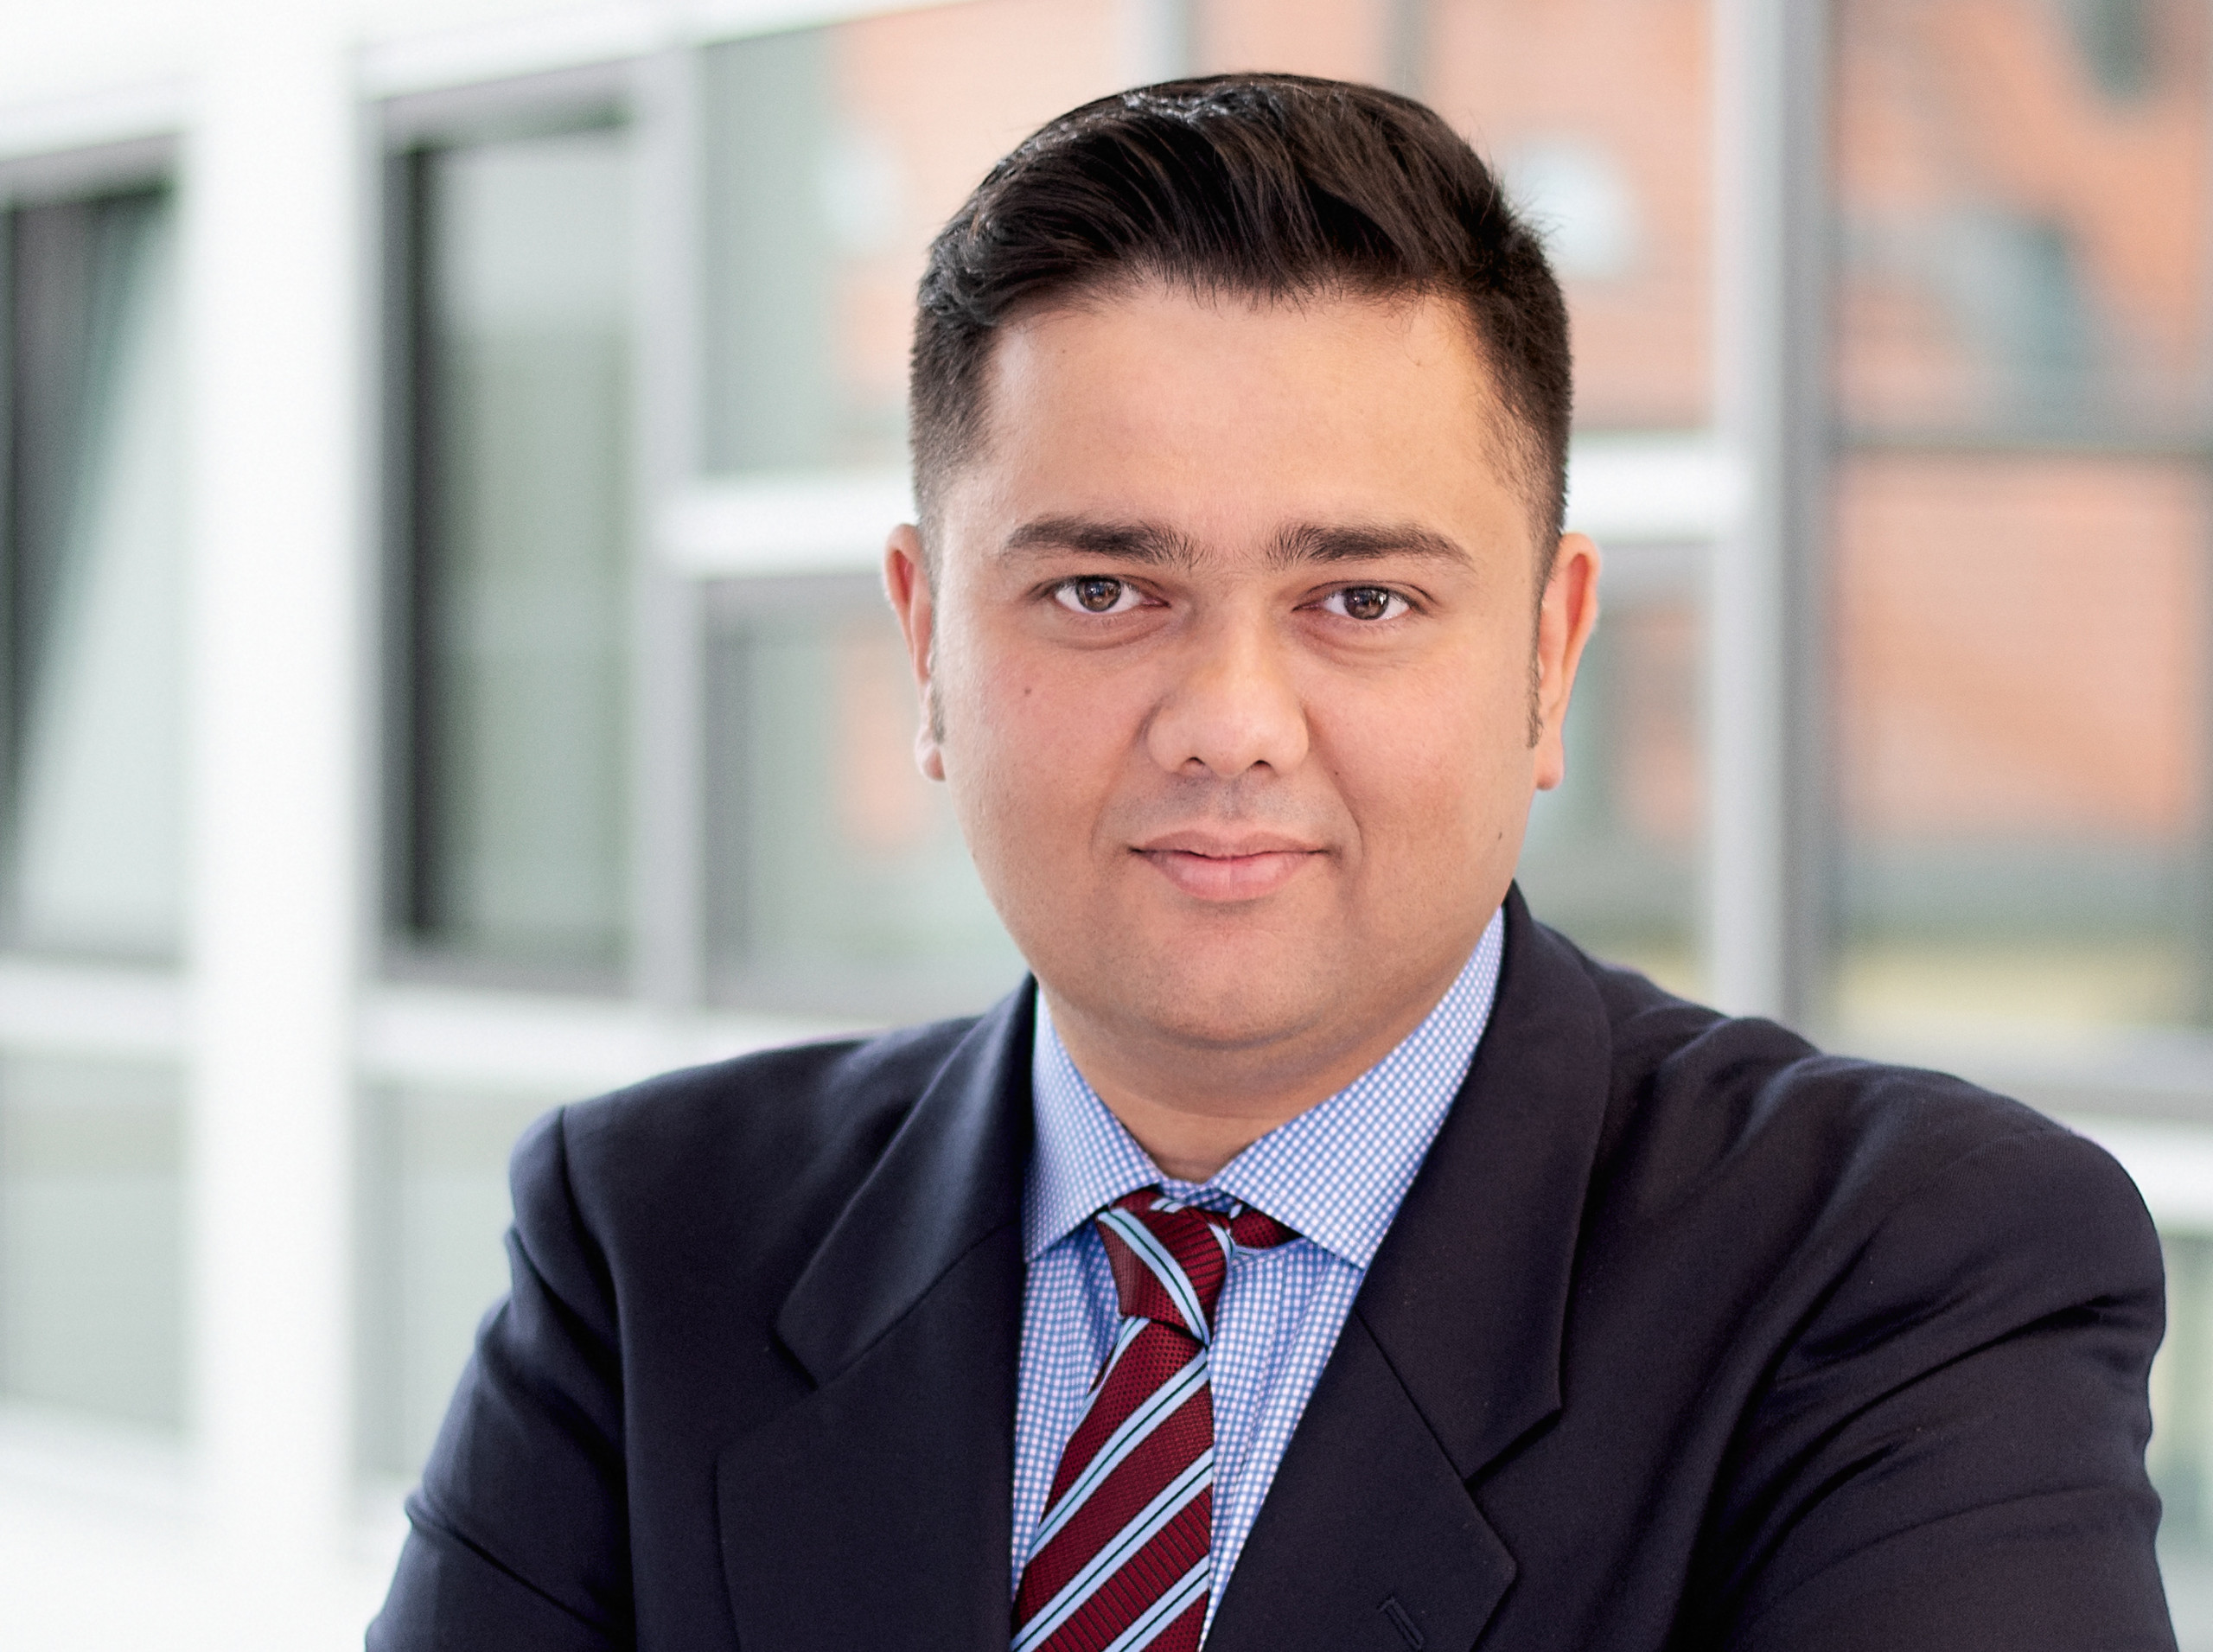 Rushabh Desai, APAC CEO of Allianz Real Estate